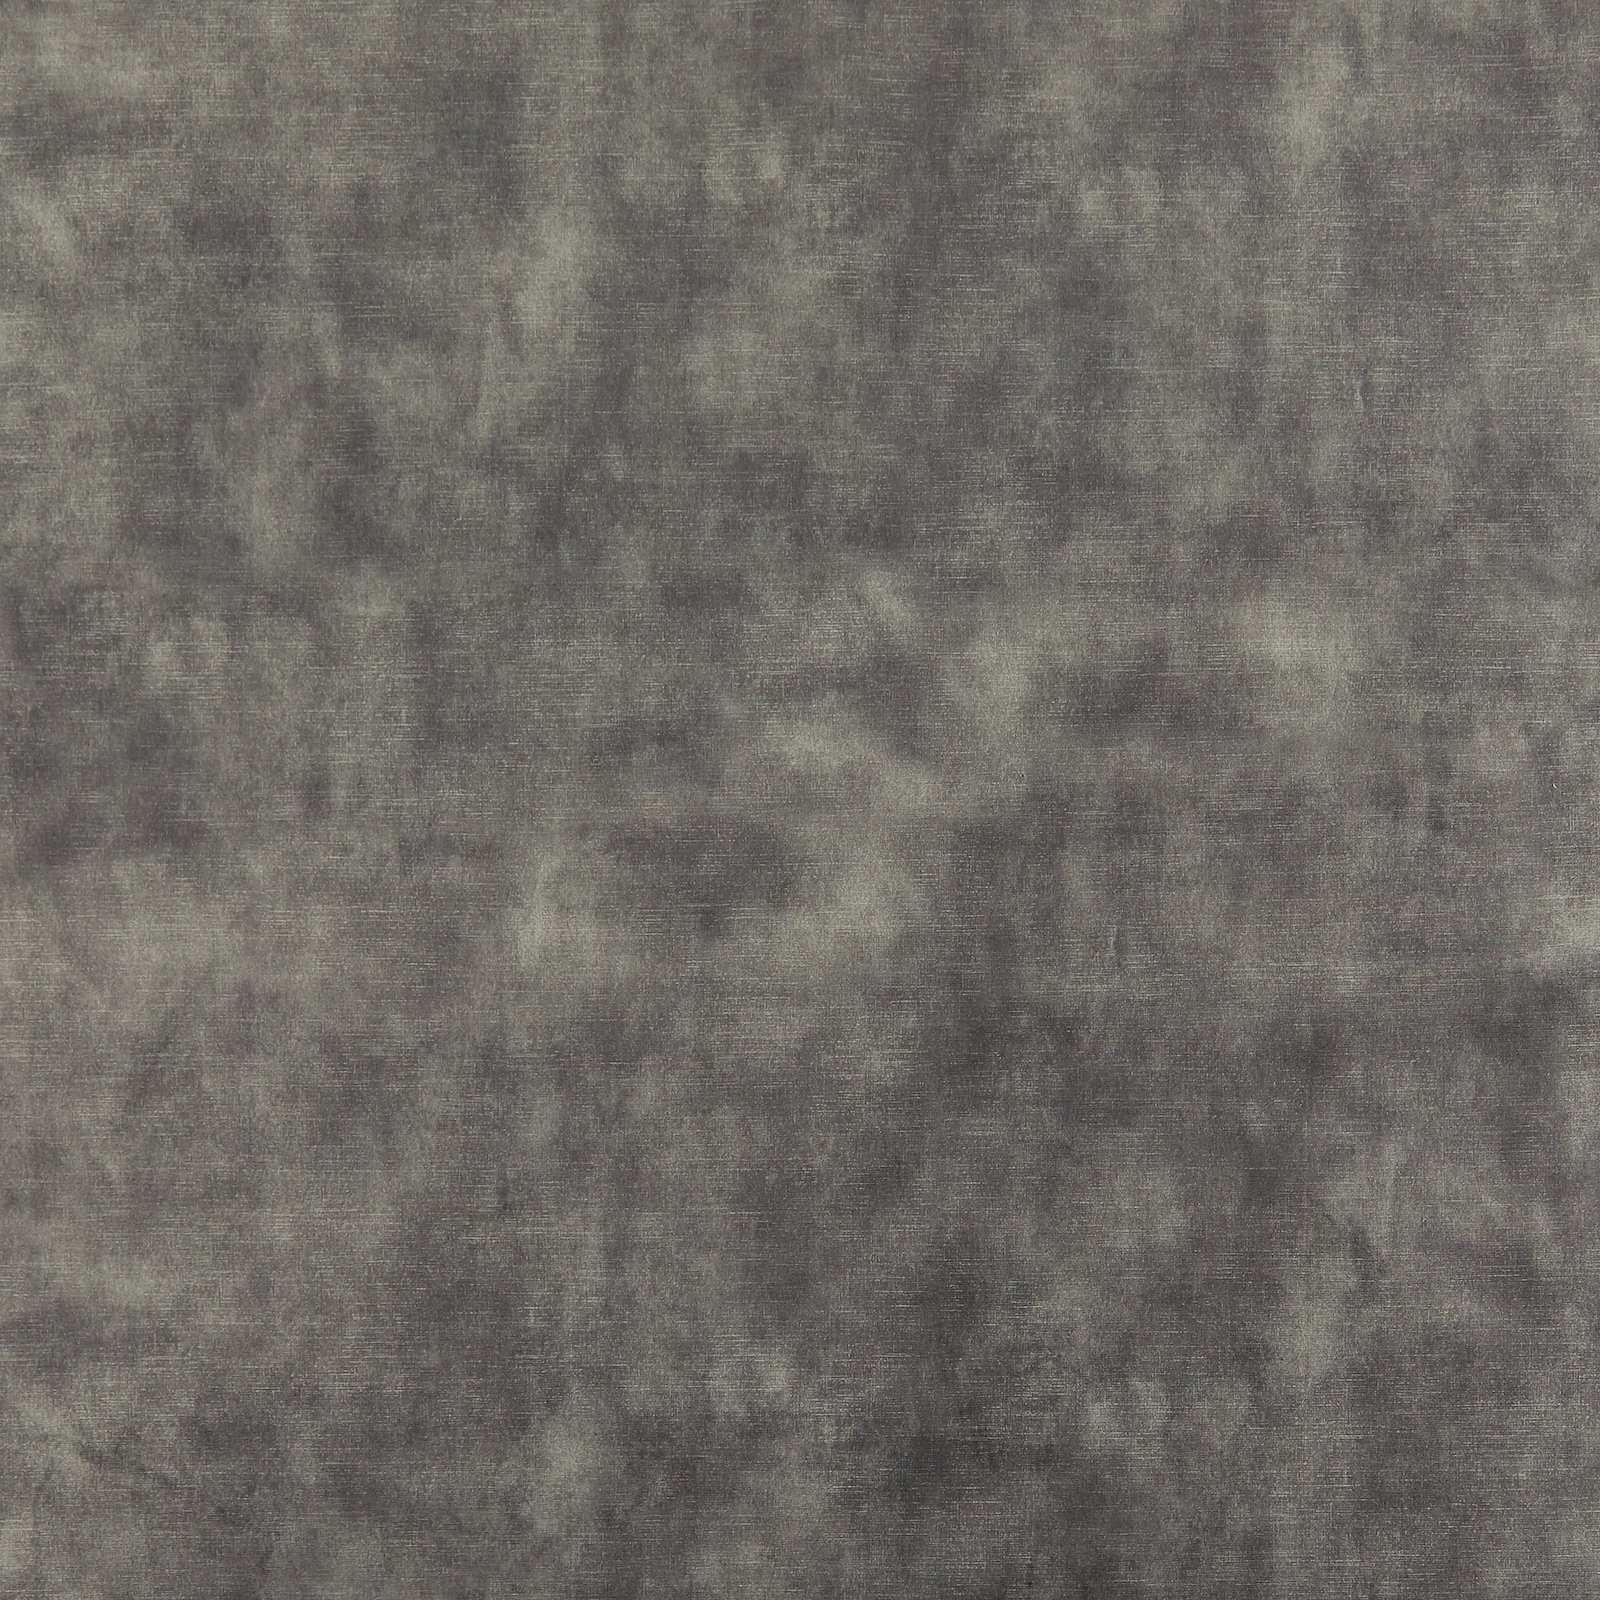 Upholstery velvet stone grey shiny 826639_pack_solid